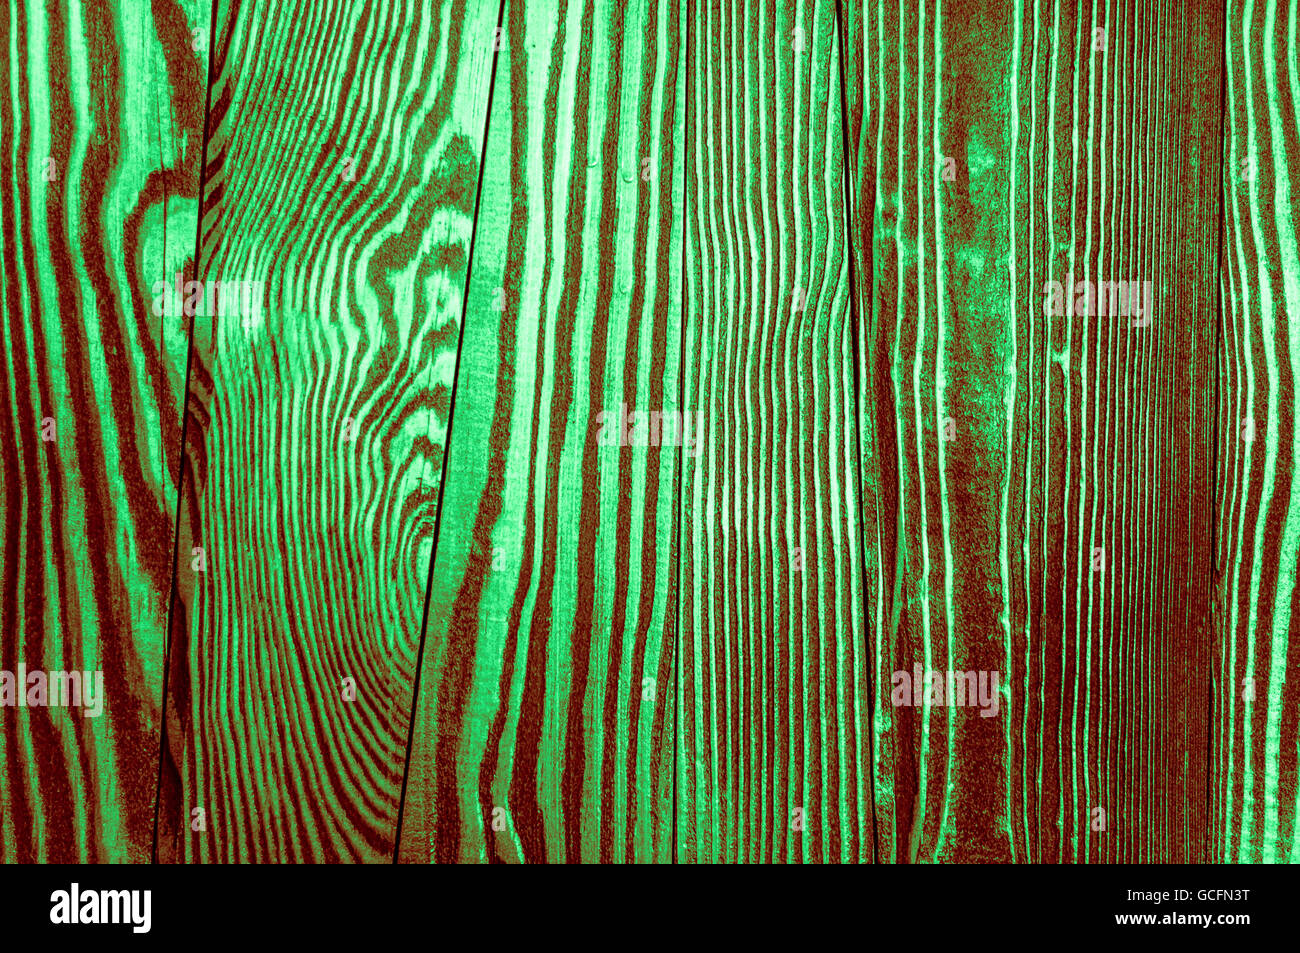 Perfetta luce verde scuro rossiccio irregolari di colore verdastro vecchio e ruvido legname Surface texture di sfondo Foto Stock